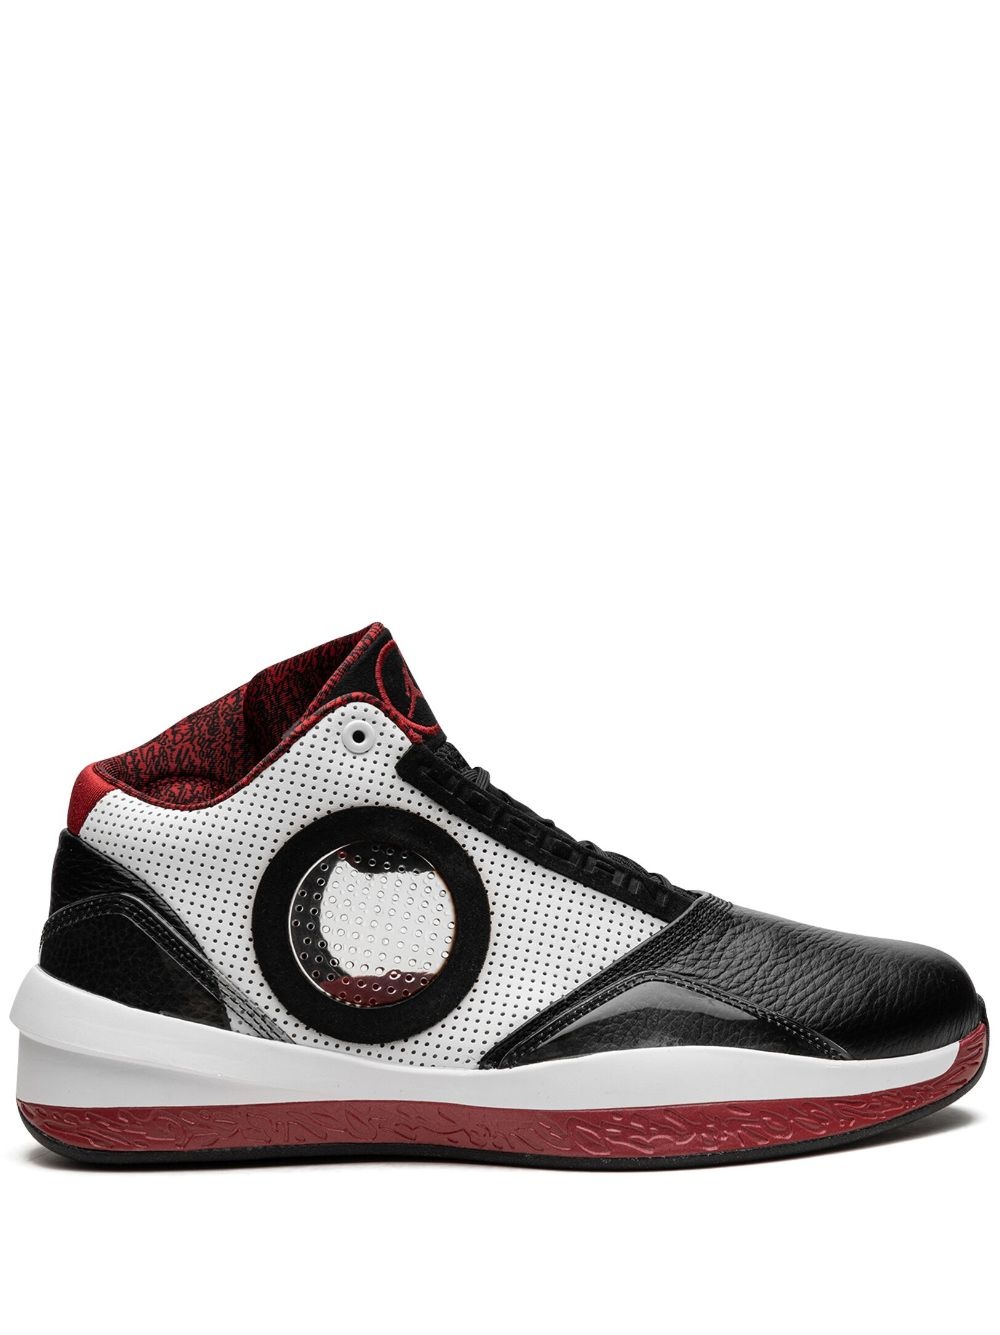 Air Jordan 2010 sneakers - 1